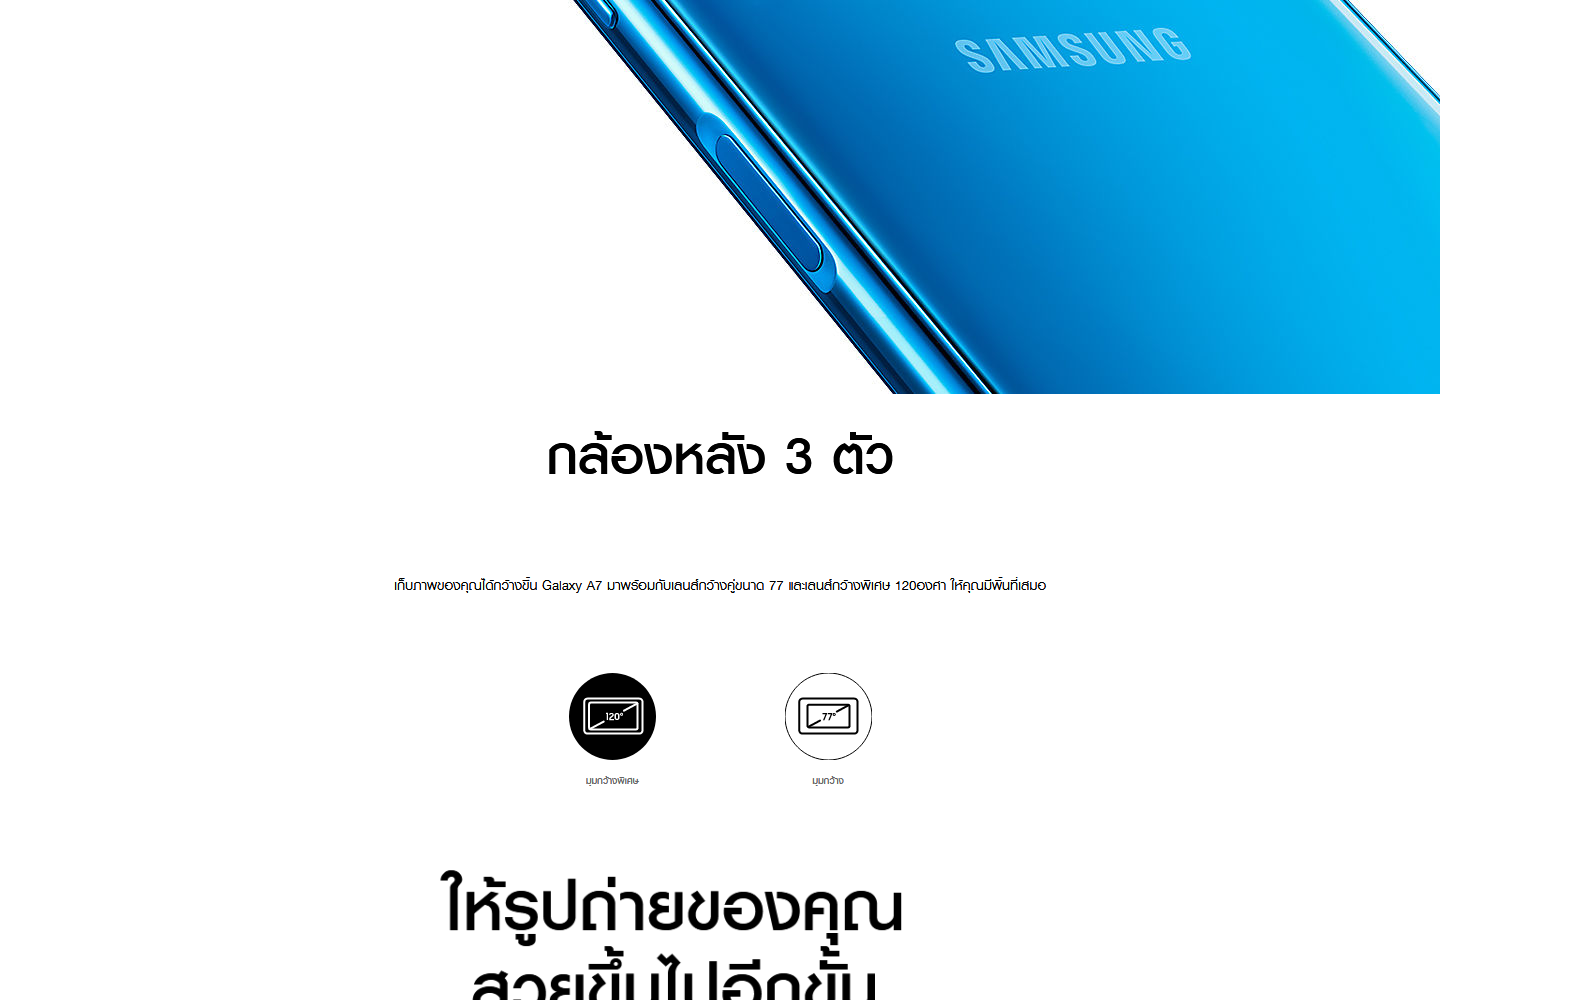 รูปภาพเพิ่มเติมเกี่ยวกับ Samsung Galaxy A7 2018 (Ram4/64GBหรือ128GB) (เครื่องศูนย์ เคลียสตอคประกัน 1เดือน) ส่งฟรี!